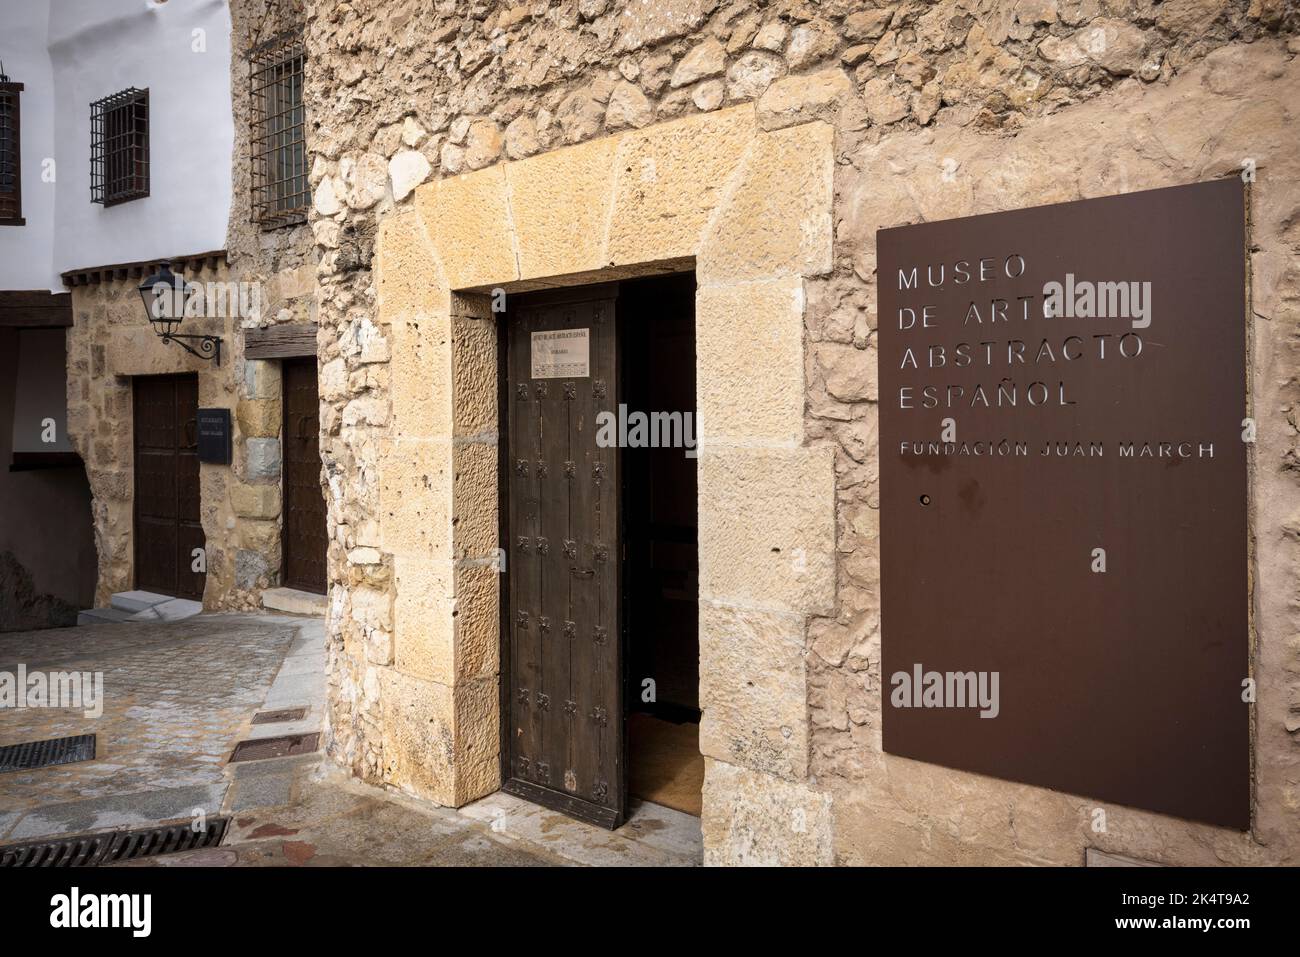 Cuenca, Provinz Cuenca, Kastilien-La Mancha, Spanien. Eintritt zum Museum für abstrakte spanische Kunst - Museo de Arte abstracto Espanol. Das Museum ist Stockfoto